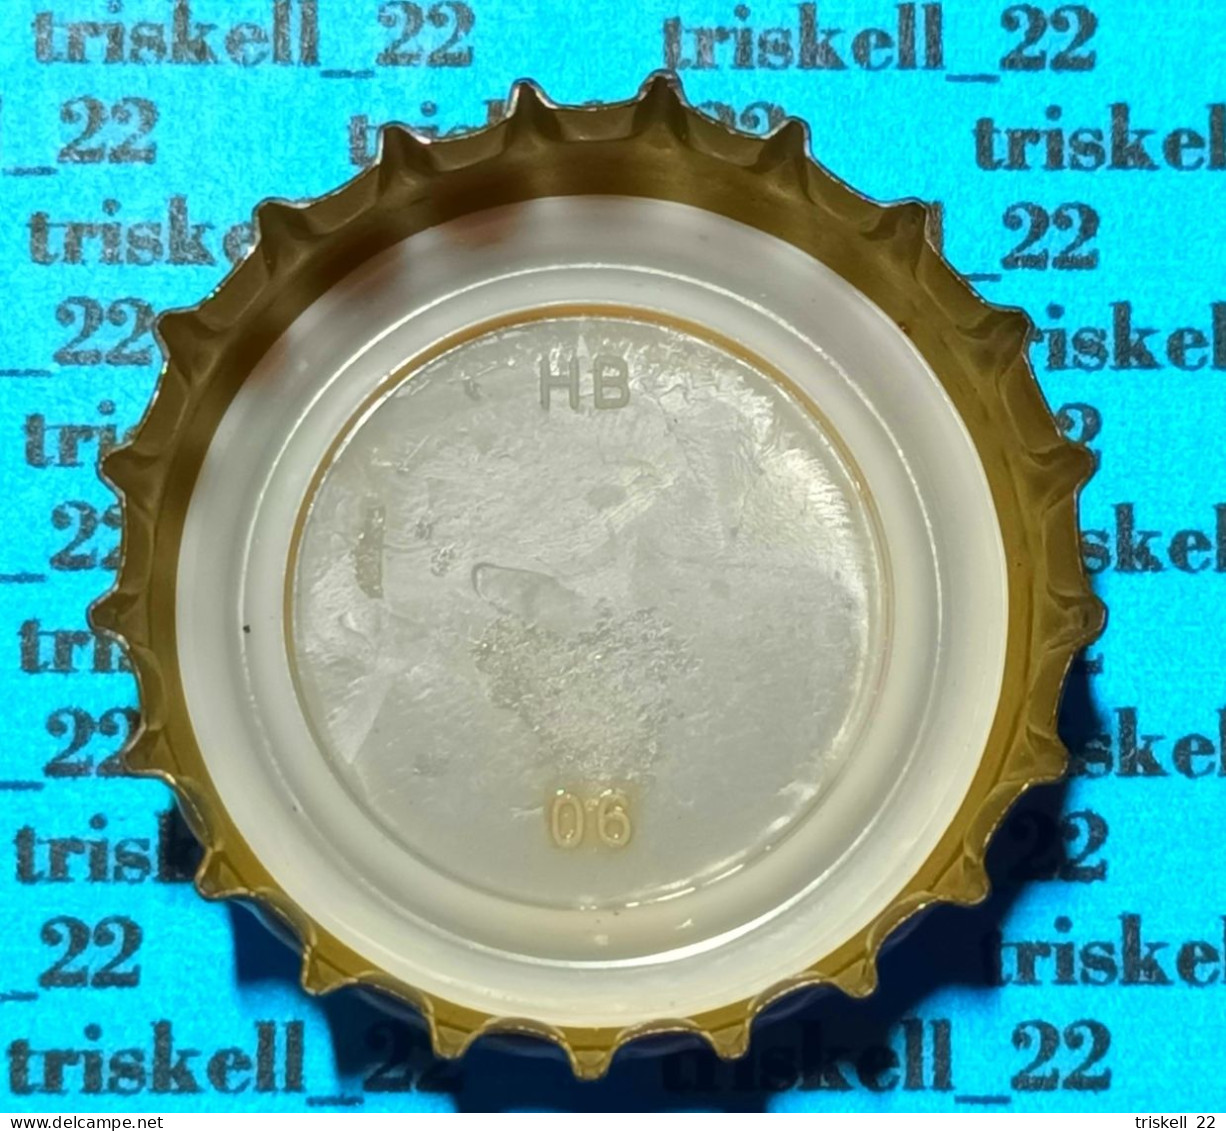 Gulden Draak Classic    Mev12 - Bière